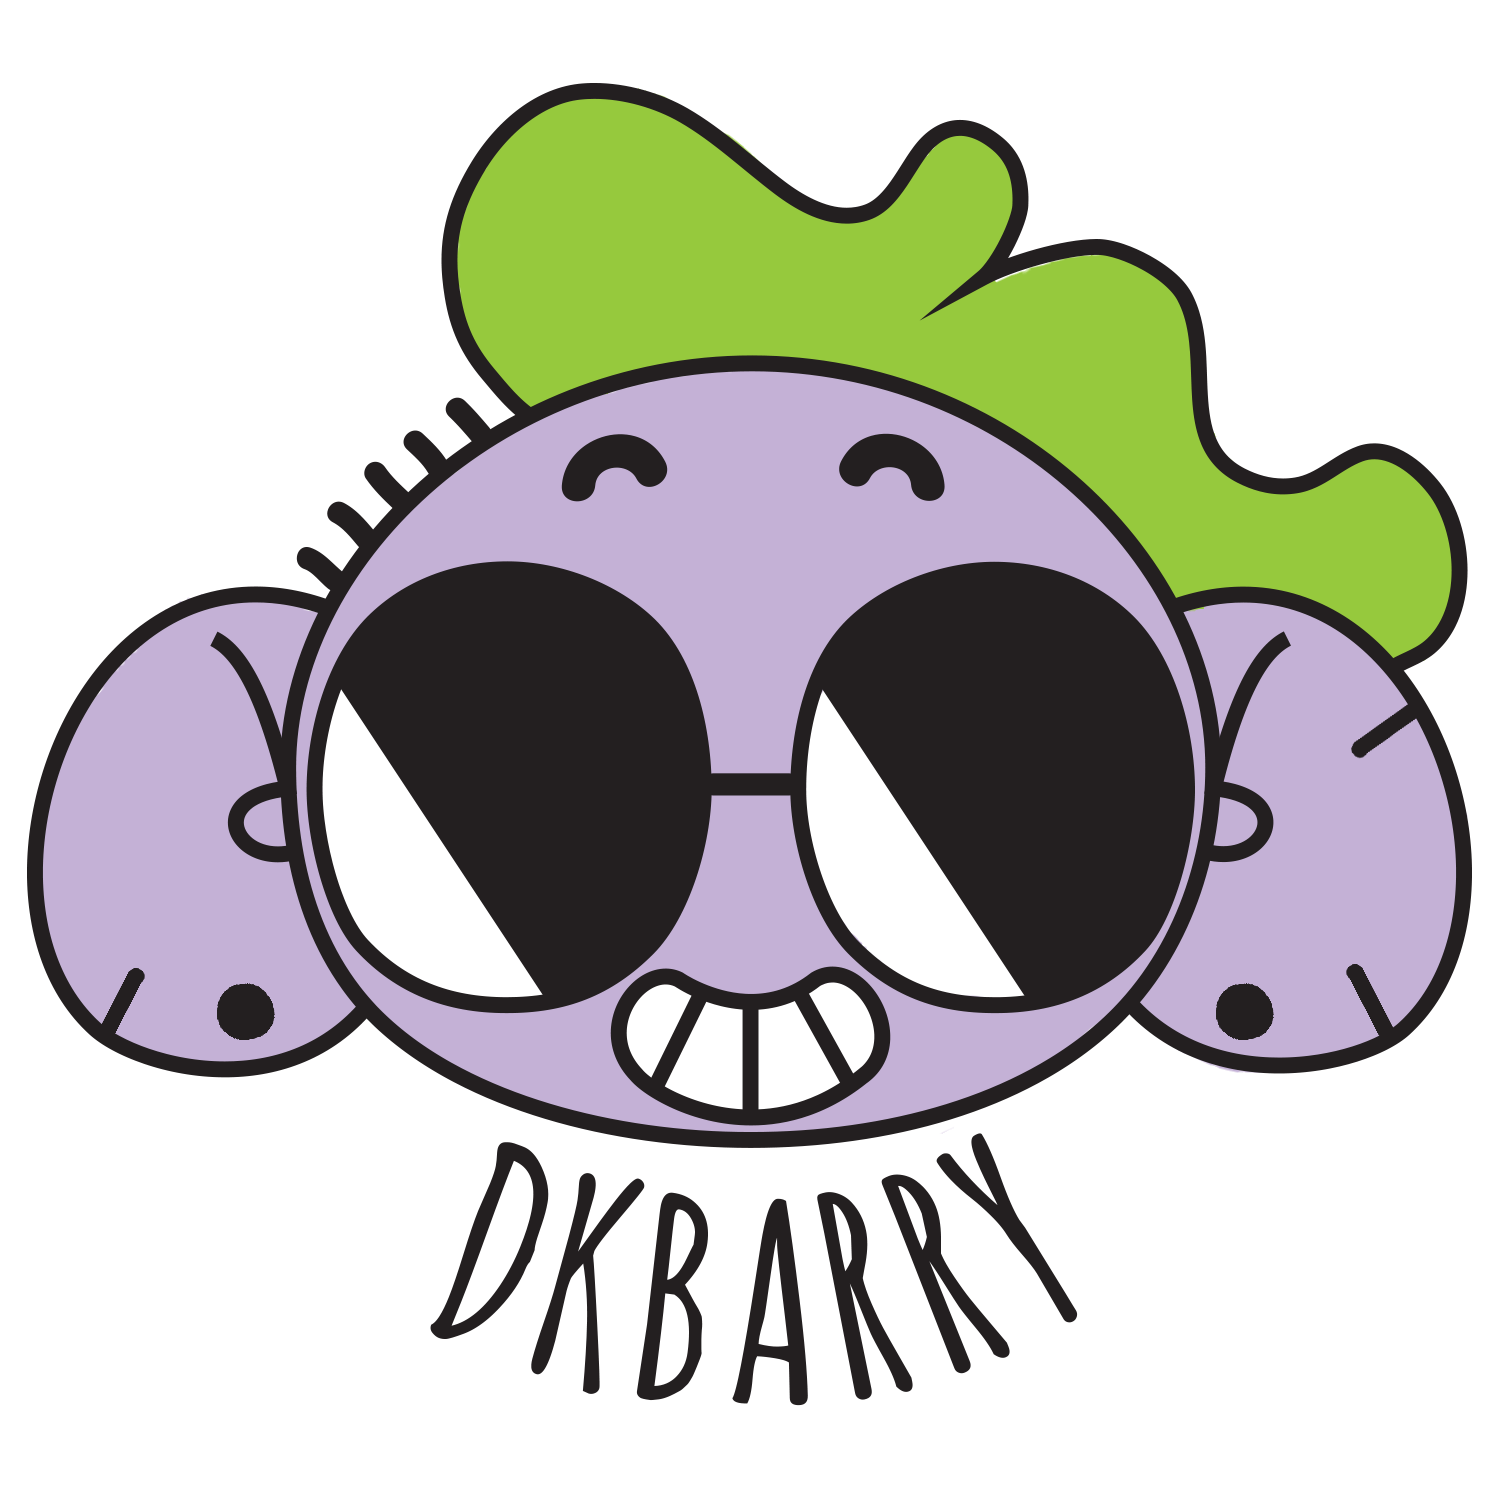 DKBarry Illustration